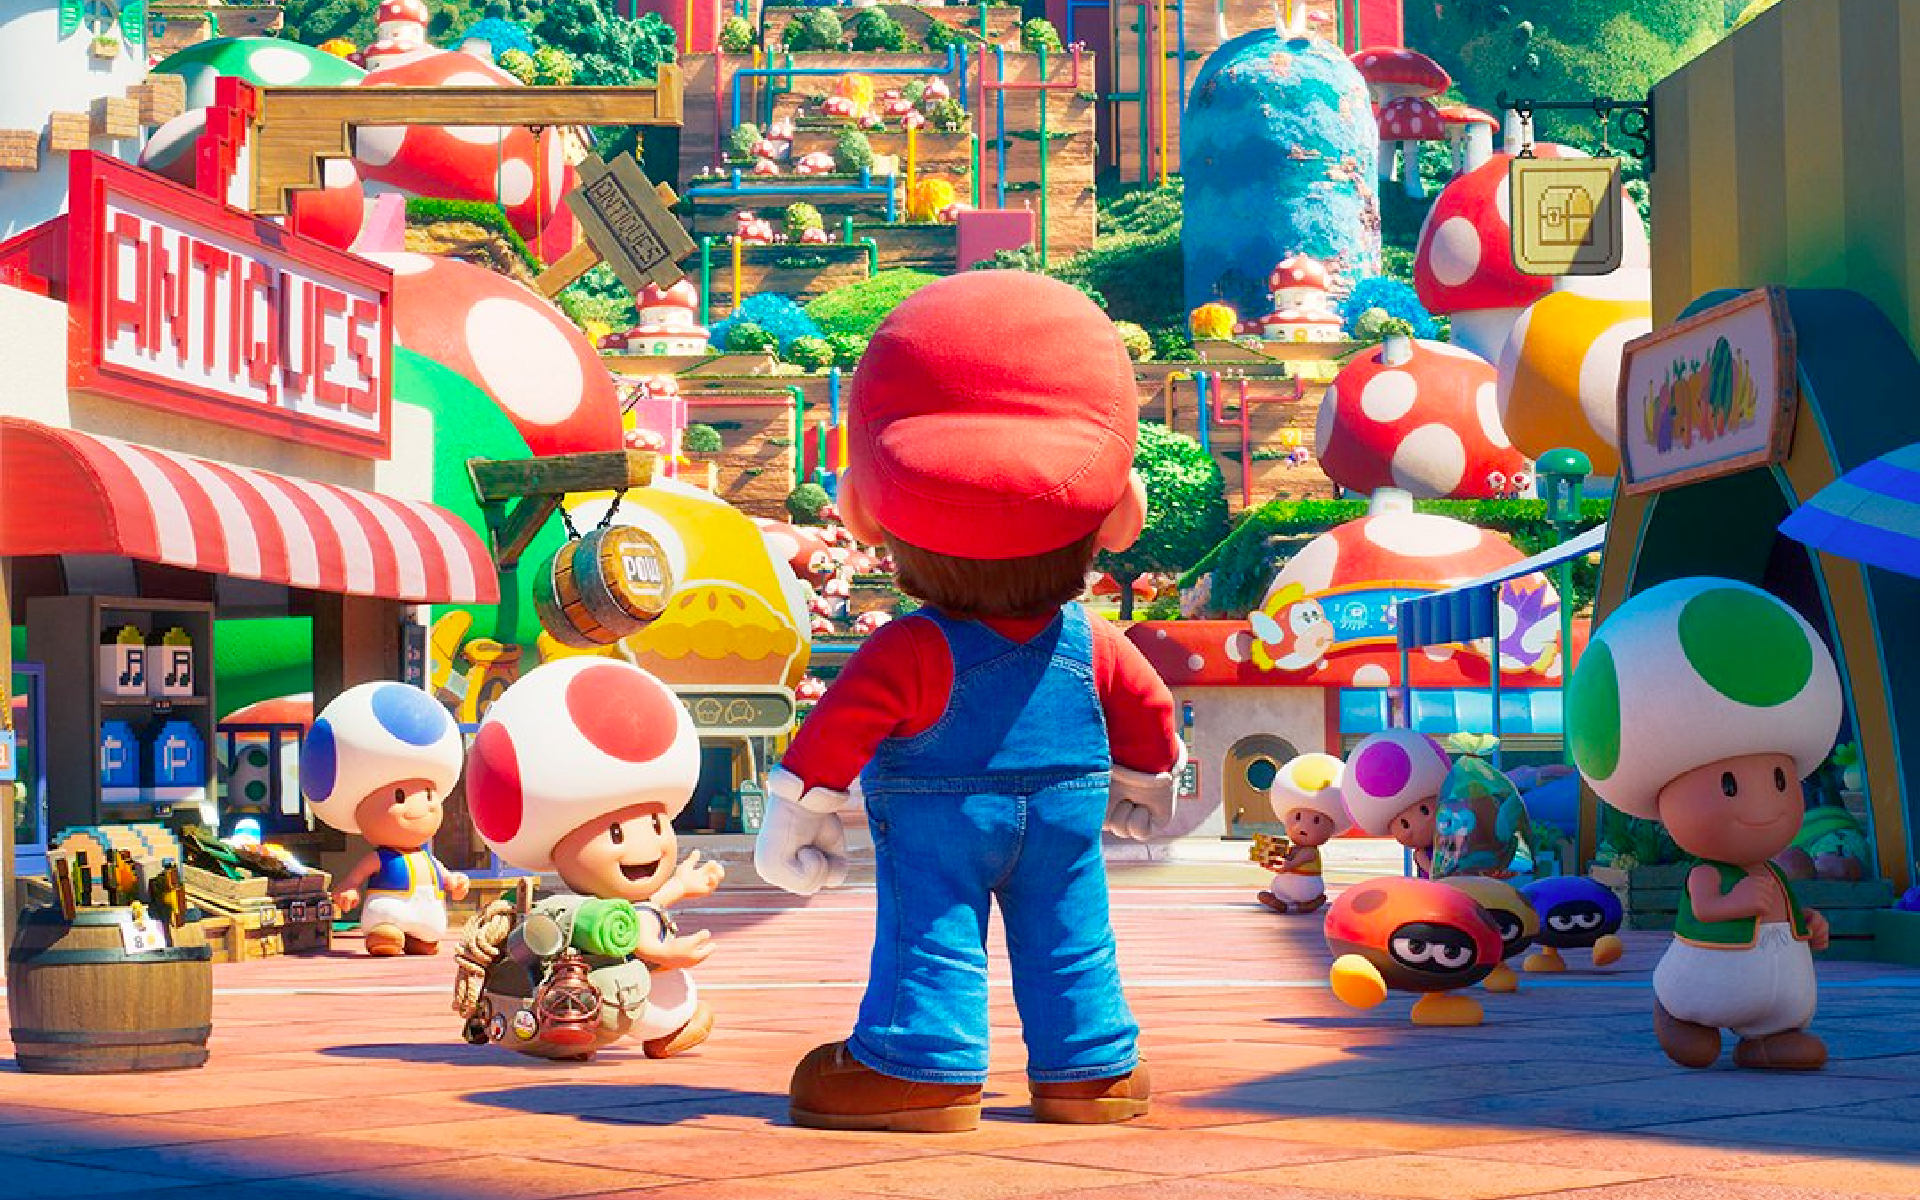 La schiena di Mario mentre si trova in un'affollata via commerciale popolata da Toads nel Regno dei Funghi